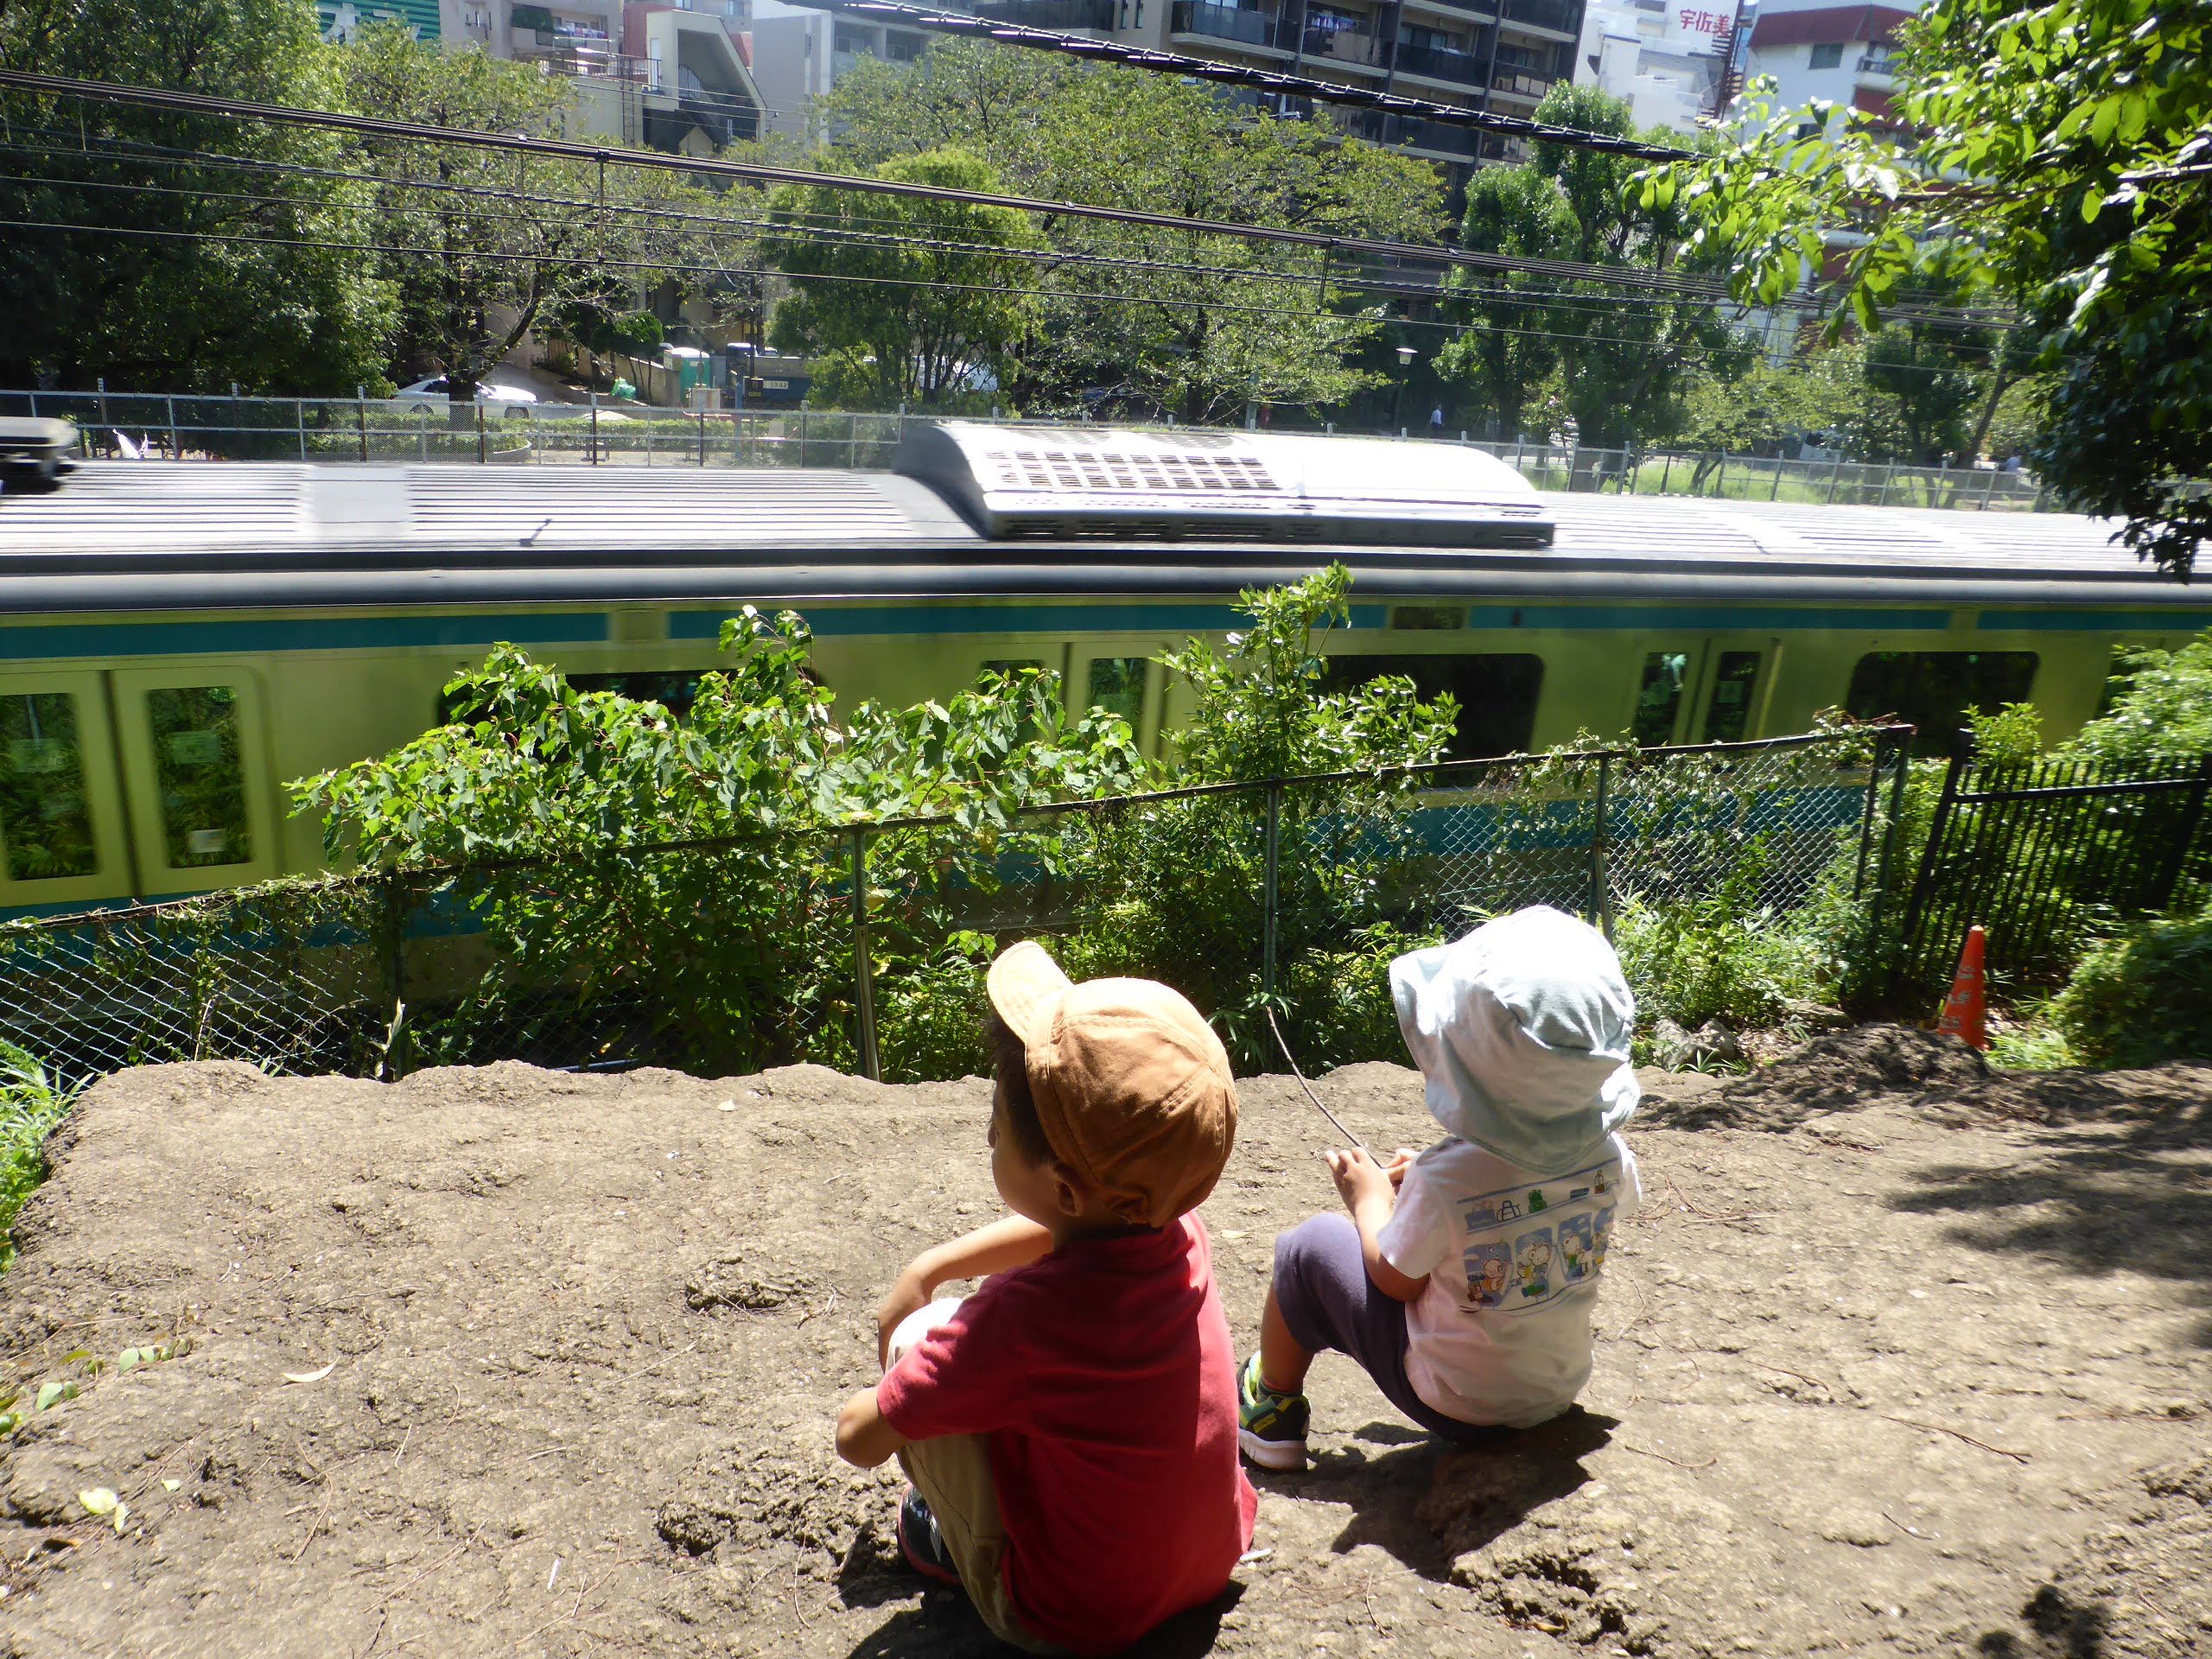 夏休みに 東京都内で 電車が間近に見える公園 5選と楽しみ方のアイデア Chiik チーク 乳幼児 小学生までの知育 教育メディア